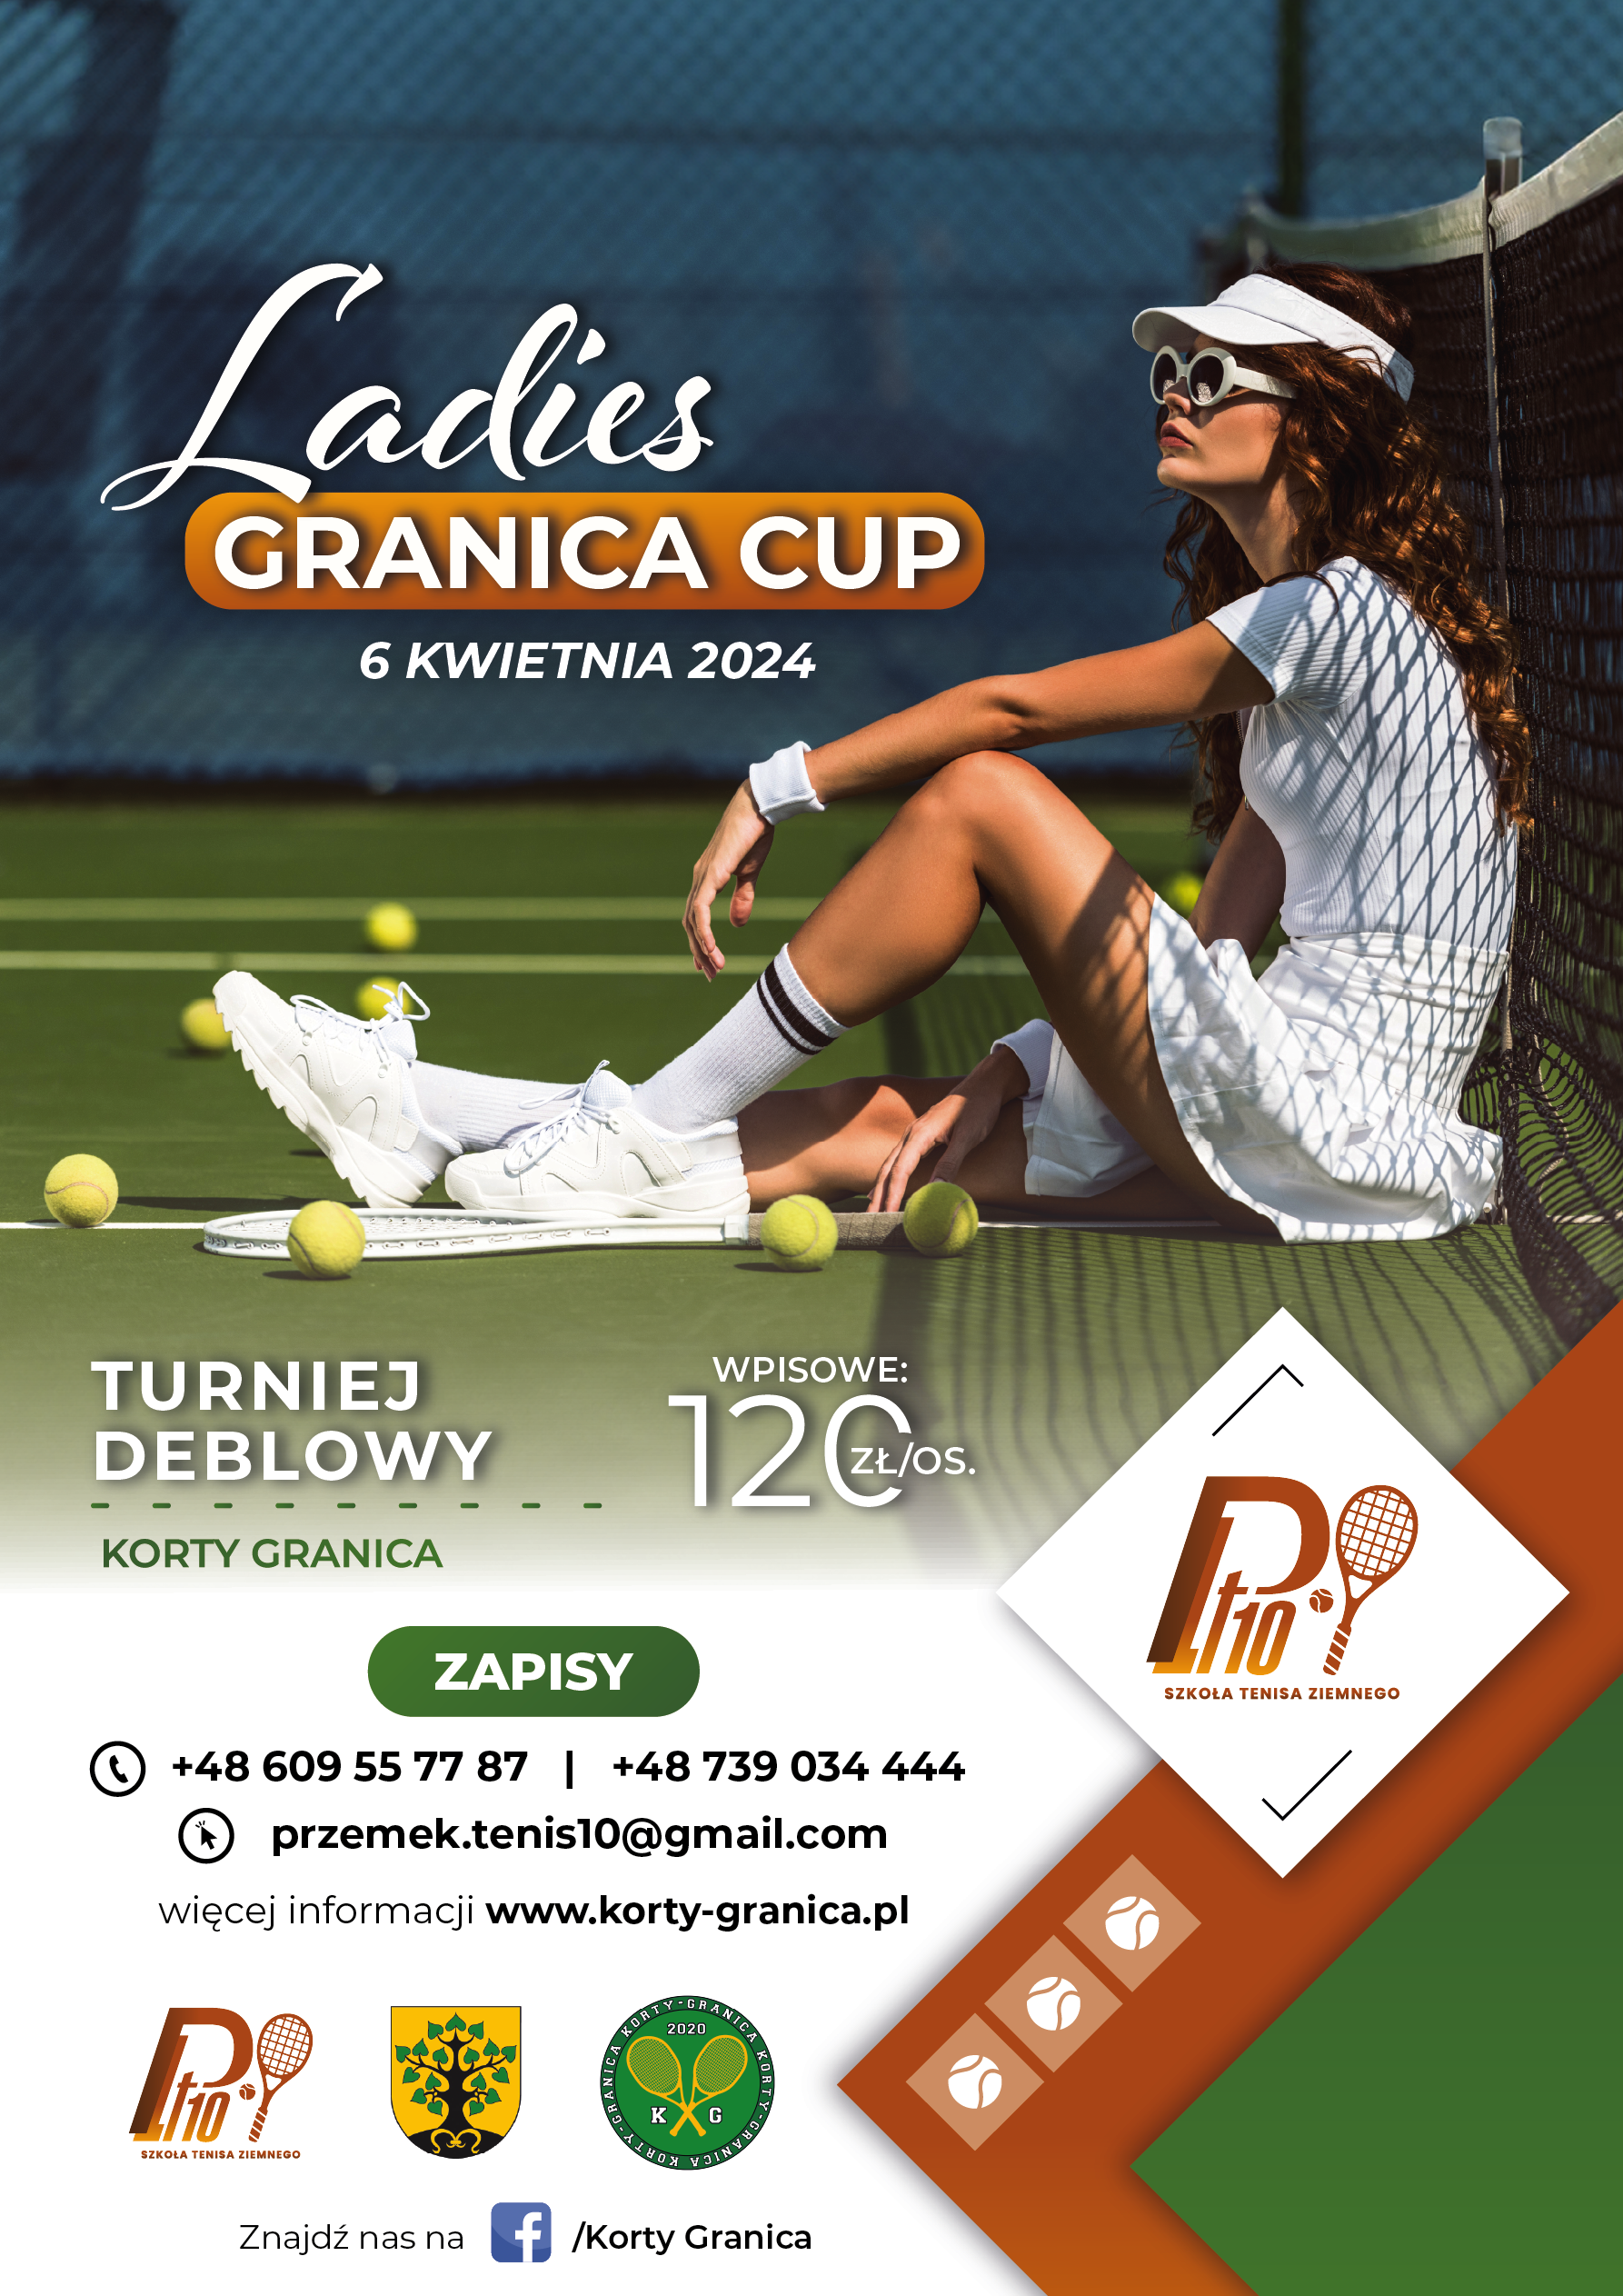 Kobiecy turniej deblowy 1 EDYCJA „Ladies GRANICA CUP”                                                    6 KWIETNIA KORTY GRANICA